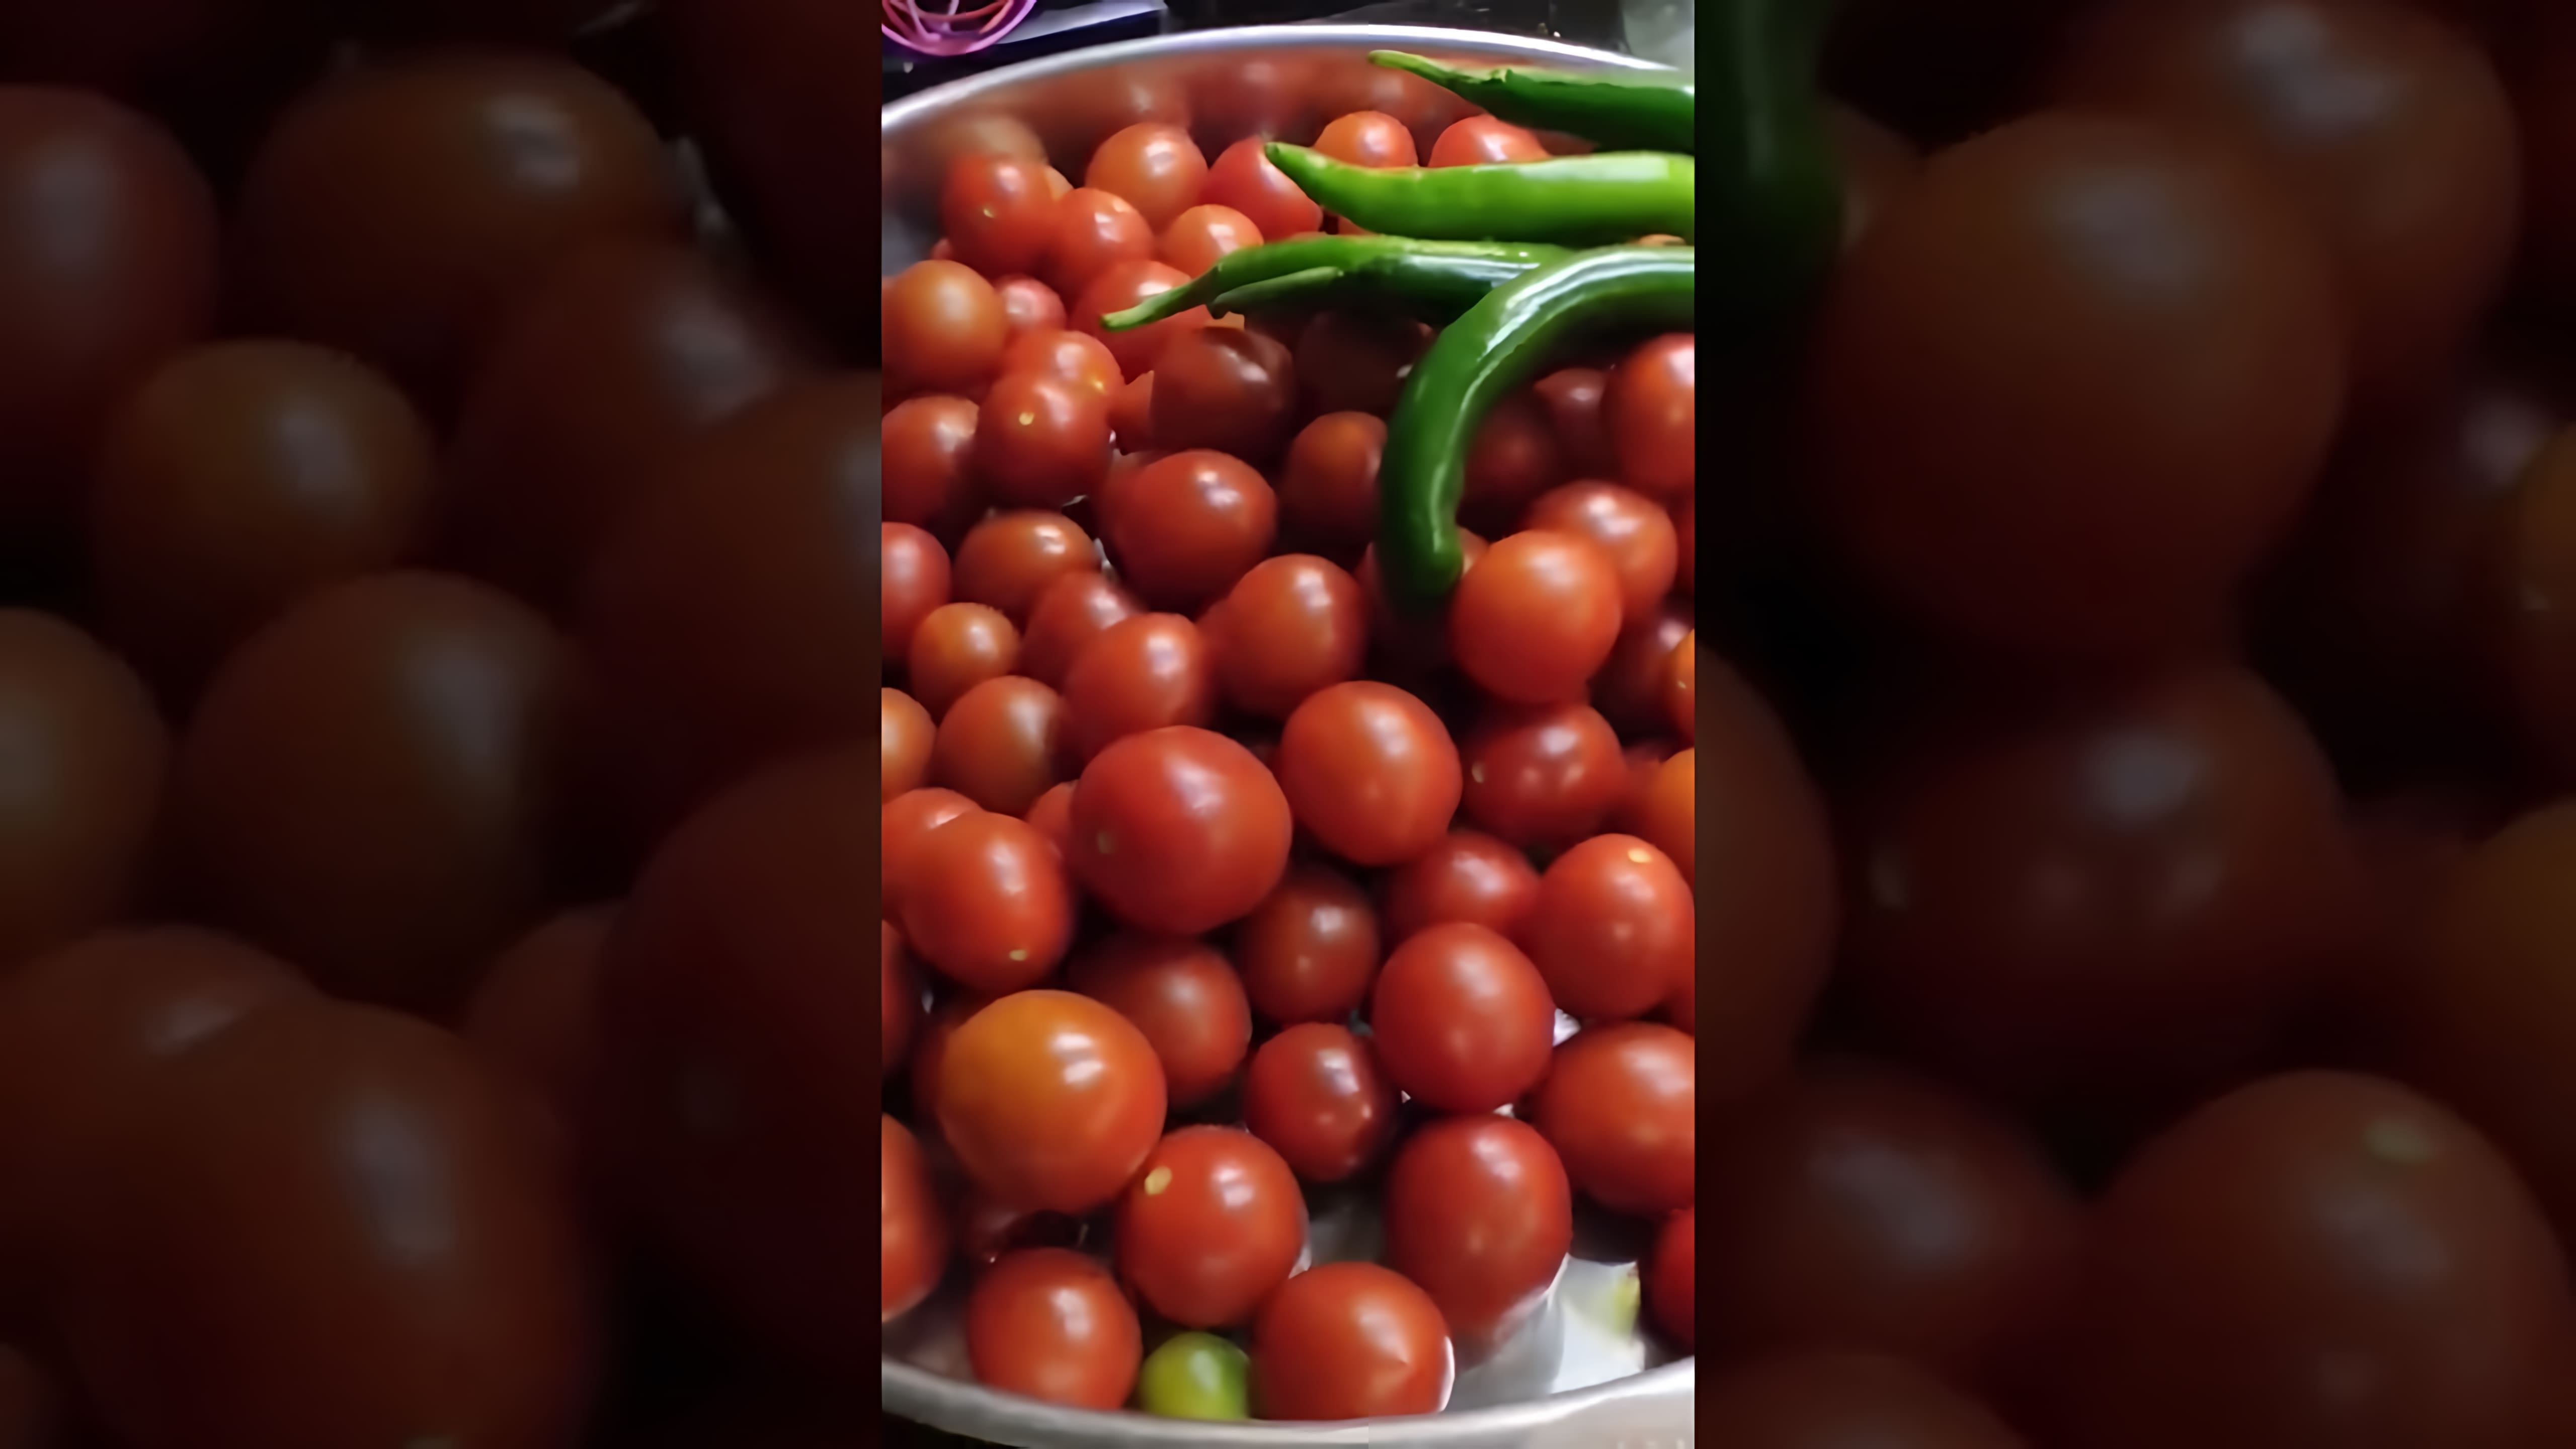 "Самый лёгкий способ замариновать помидоры черри на зиму" - это видео-ролик, который показывает, как быстро и просто приготовить вкусные помидоры черри на зиму